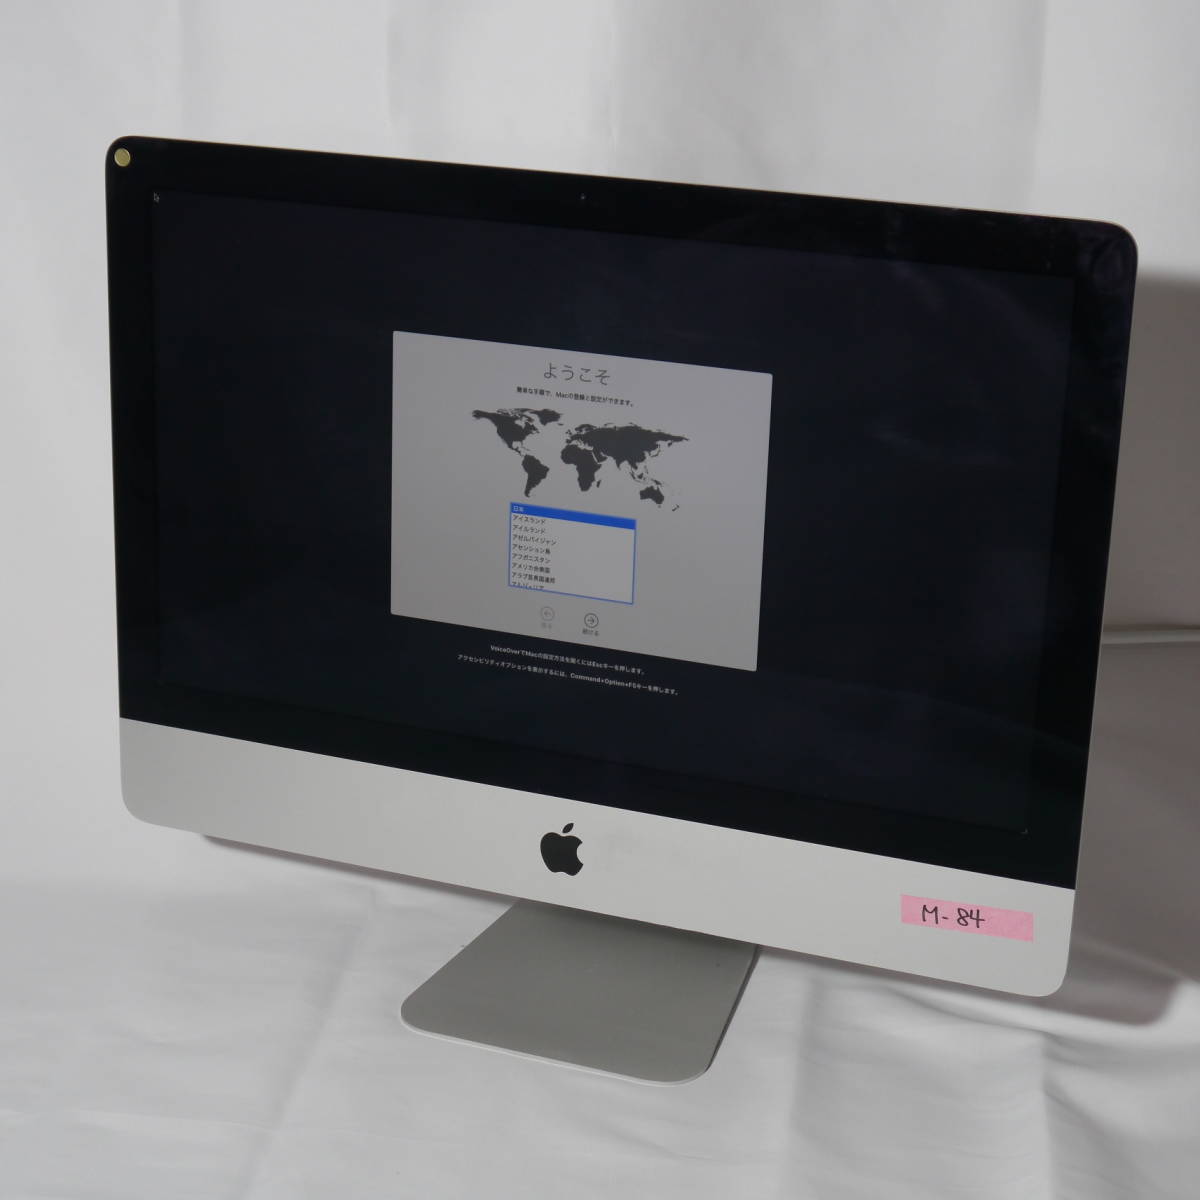 直営店に限定 A1418 i5 Core 【M-84】Apple iMac iMac 【早い者勝ち